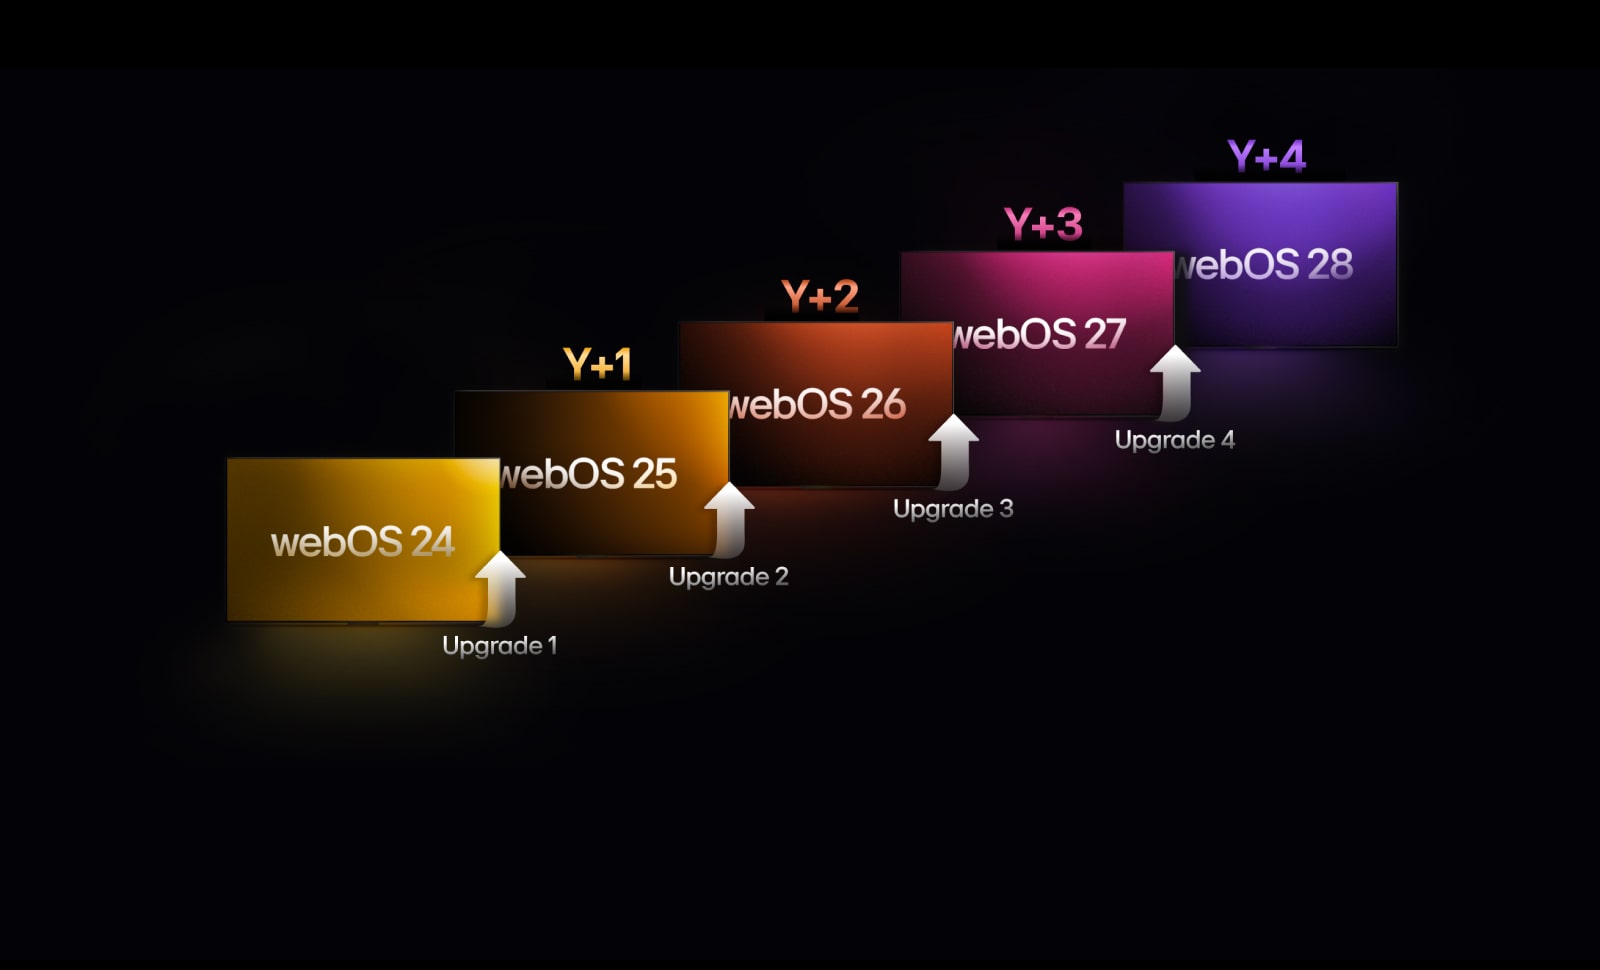 Vijf rechthoeken met verschillende kleuren worden naar boven geplaatst, elk met een label met een jaar van “webOS 24” tot “webOS 28”. Er staan omhoog wijzende pijlen tussen de rechthoeken, gelabeld van “Upgrade 1” naar “Upgrade 4”.